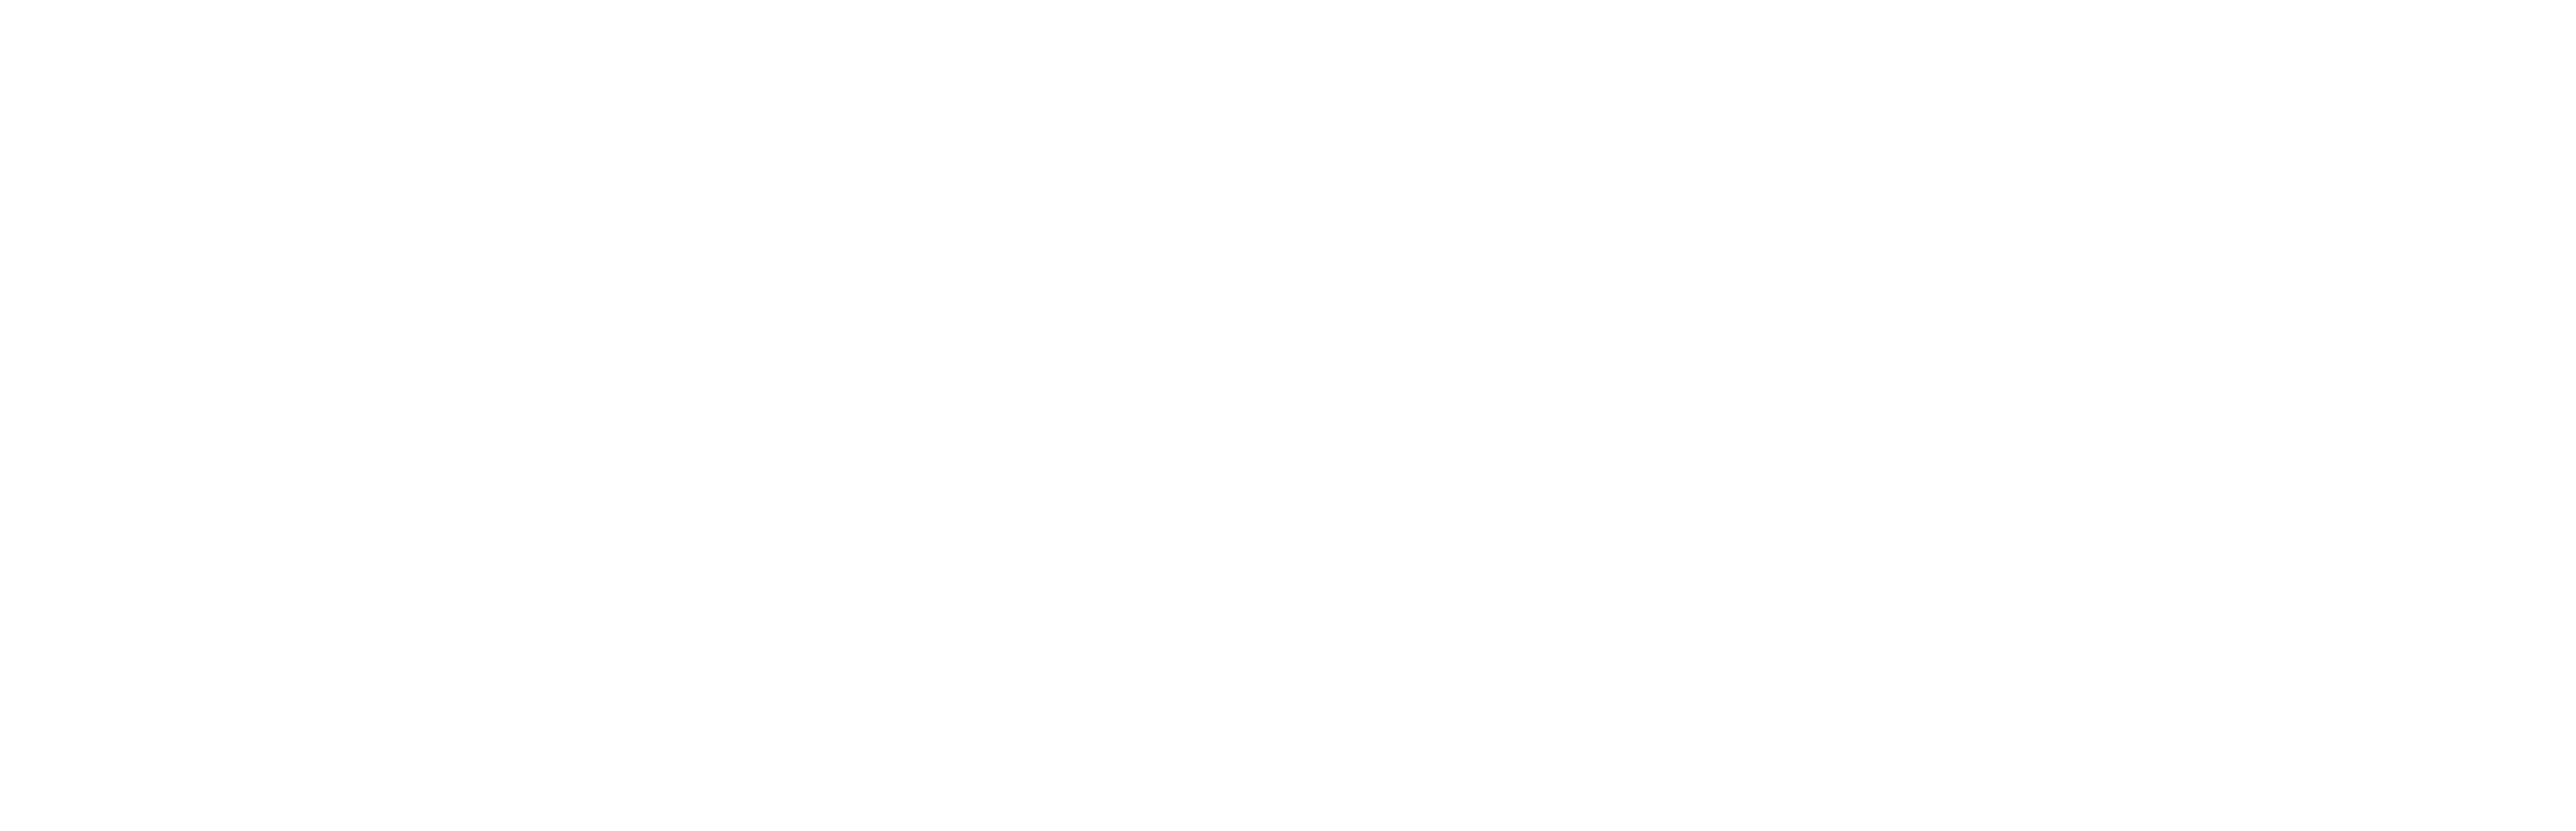 Safety Grip